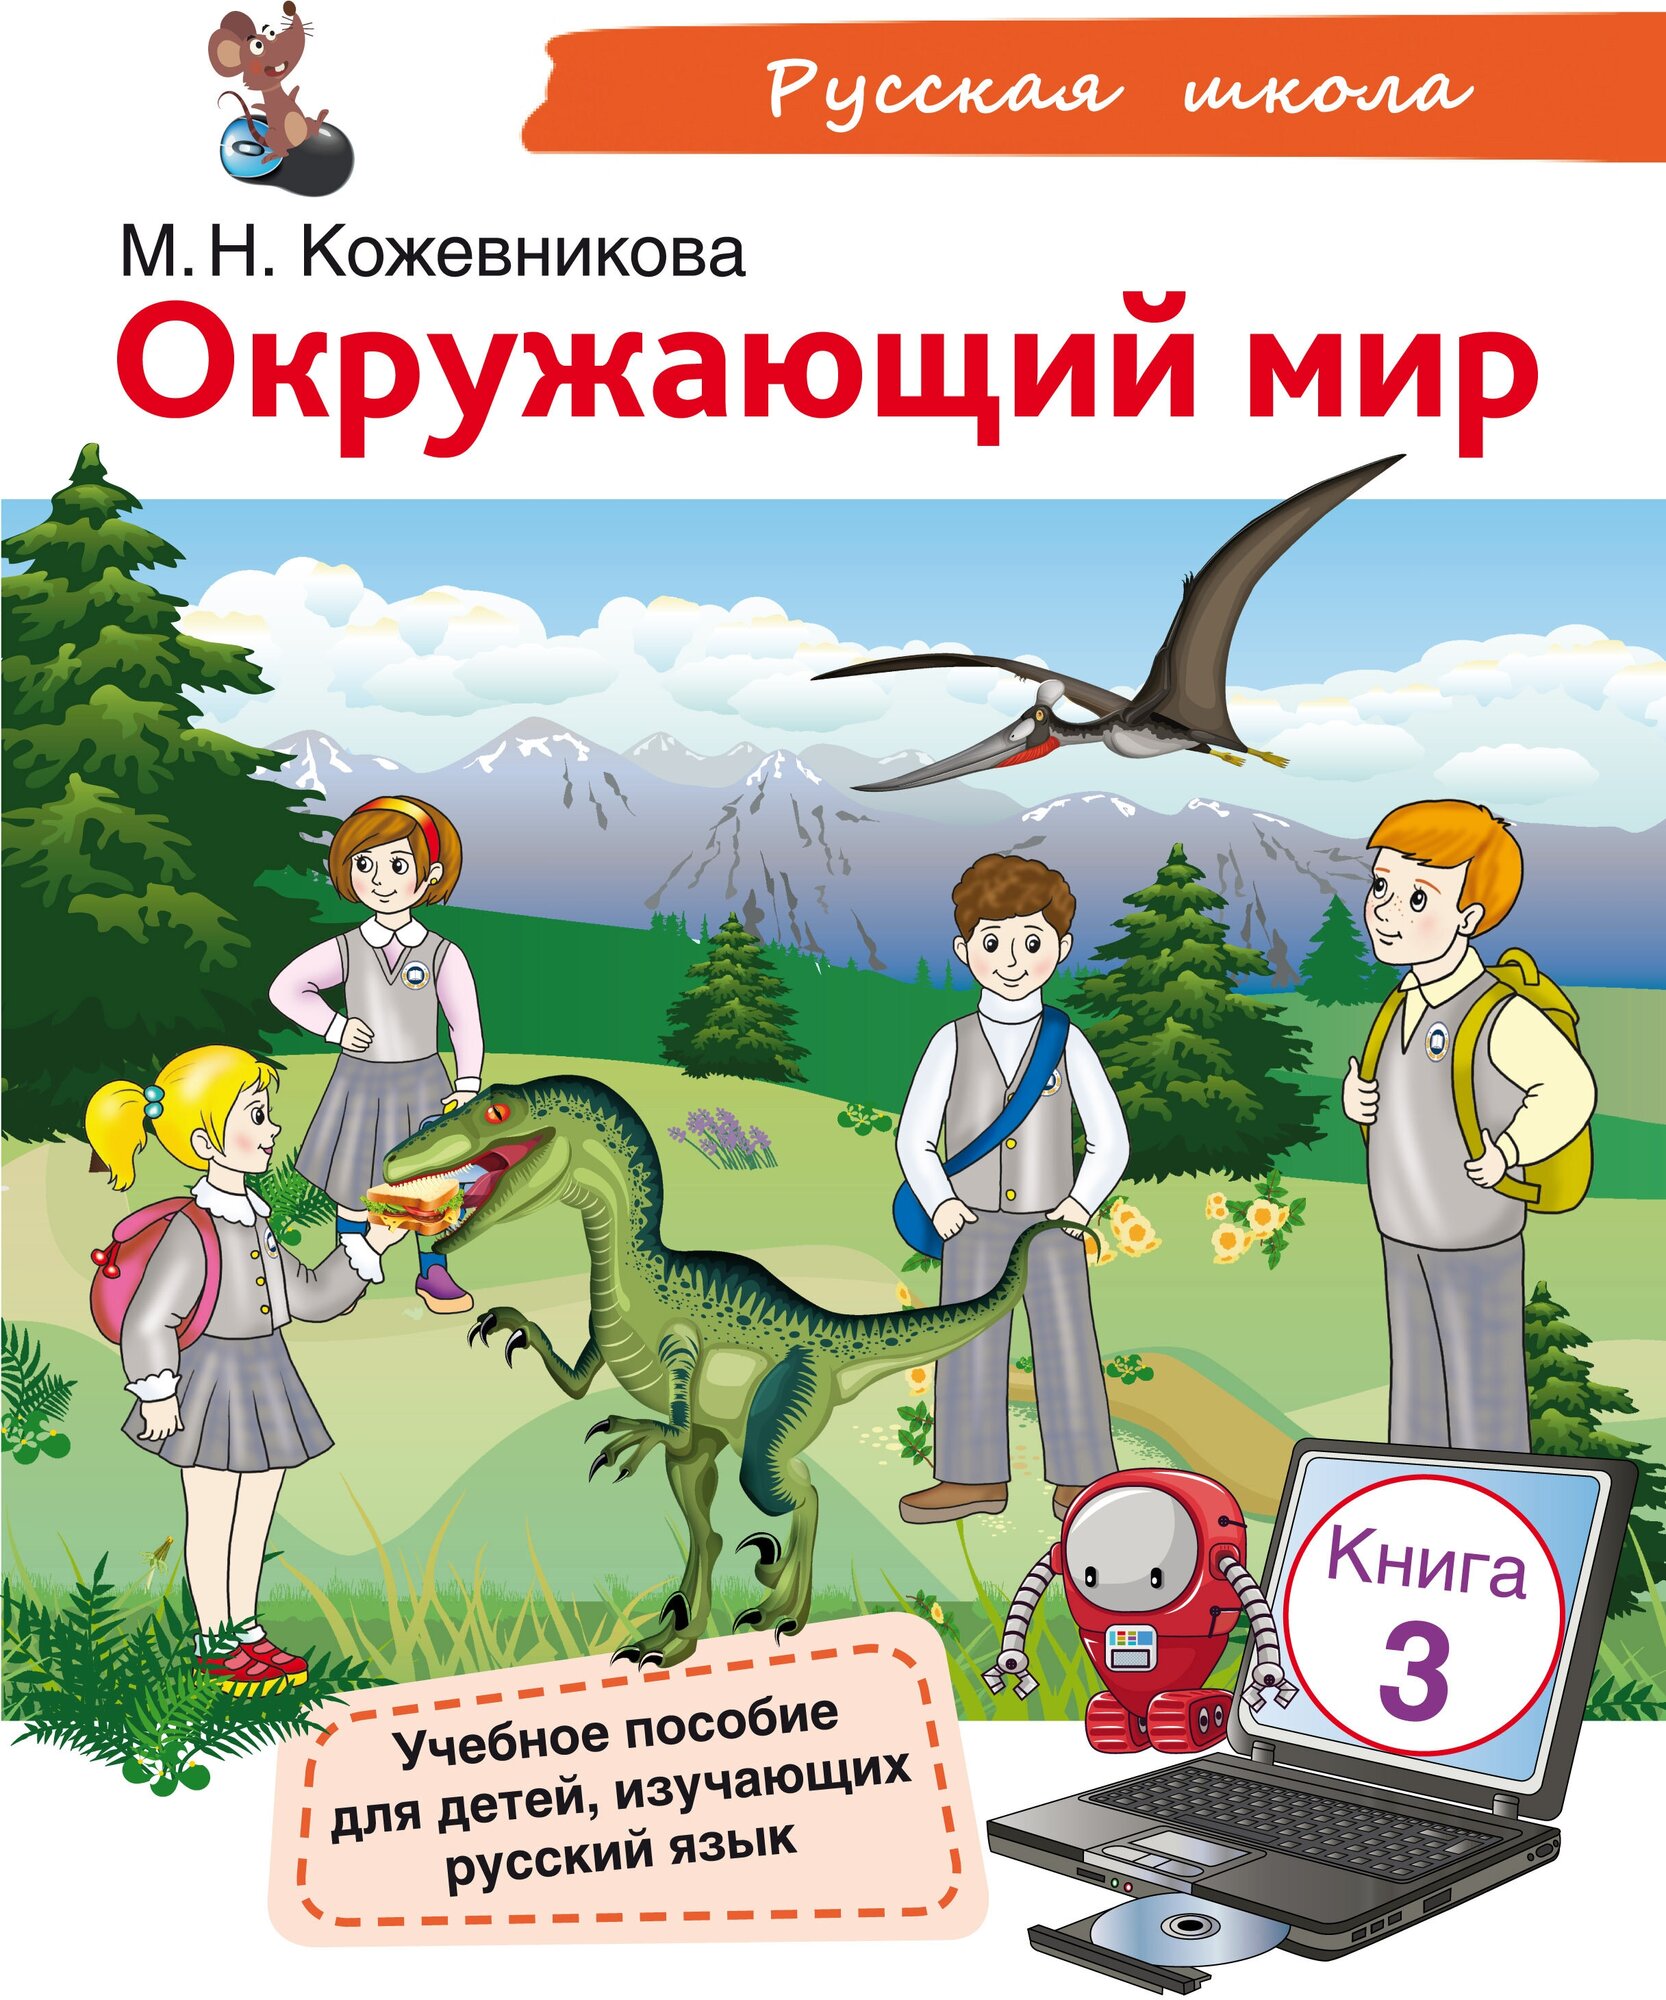 Окружающий мир: учебное пособие для детей-билингвов. Книга 3